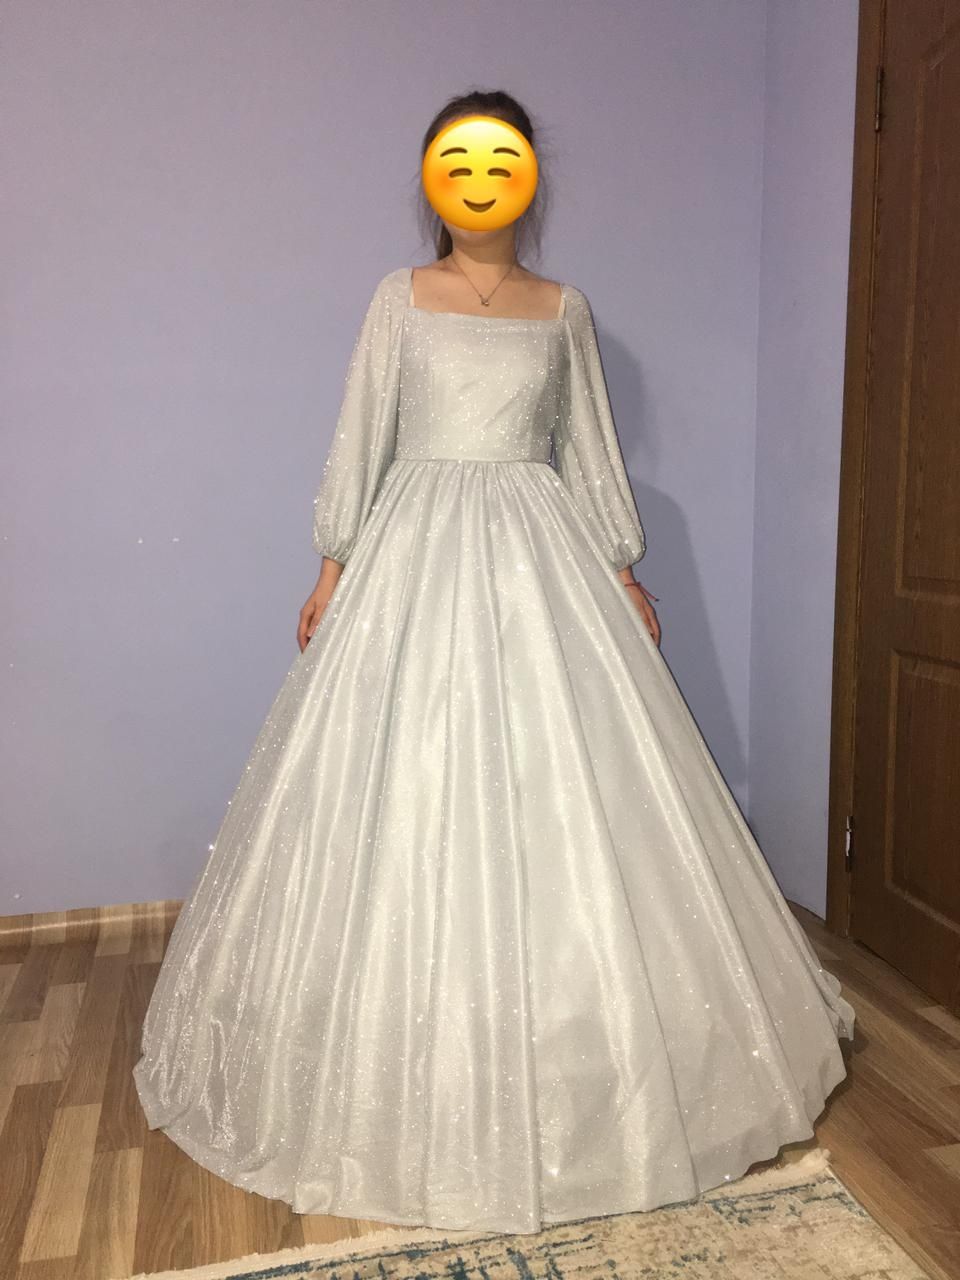 Свадебные платья на прокат и продажу